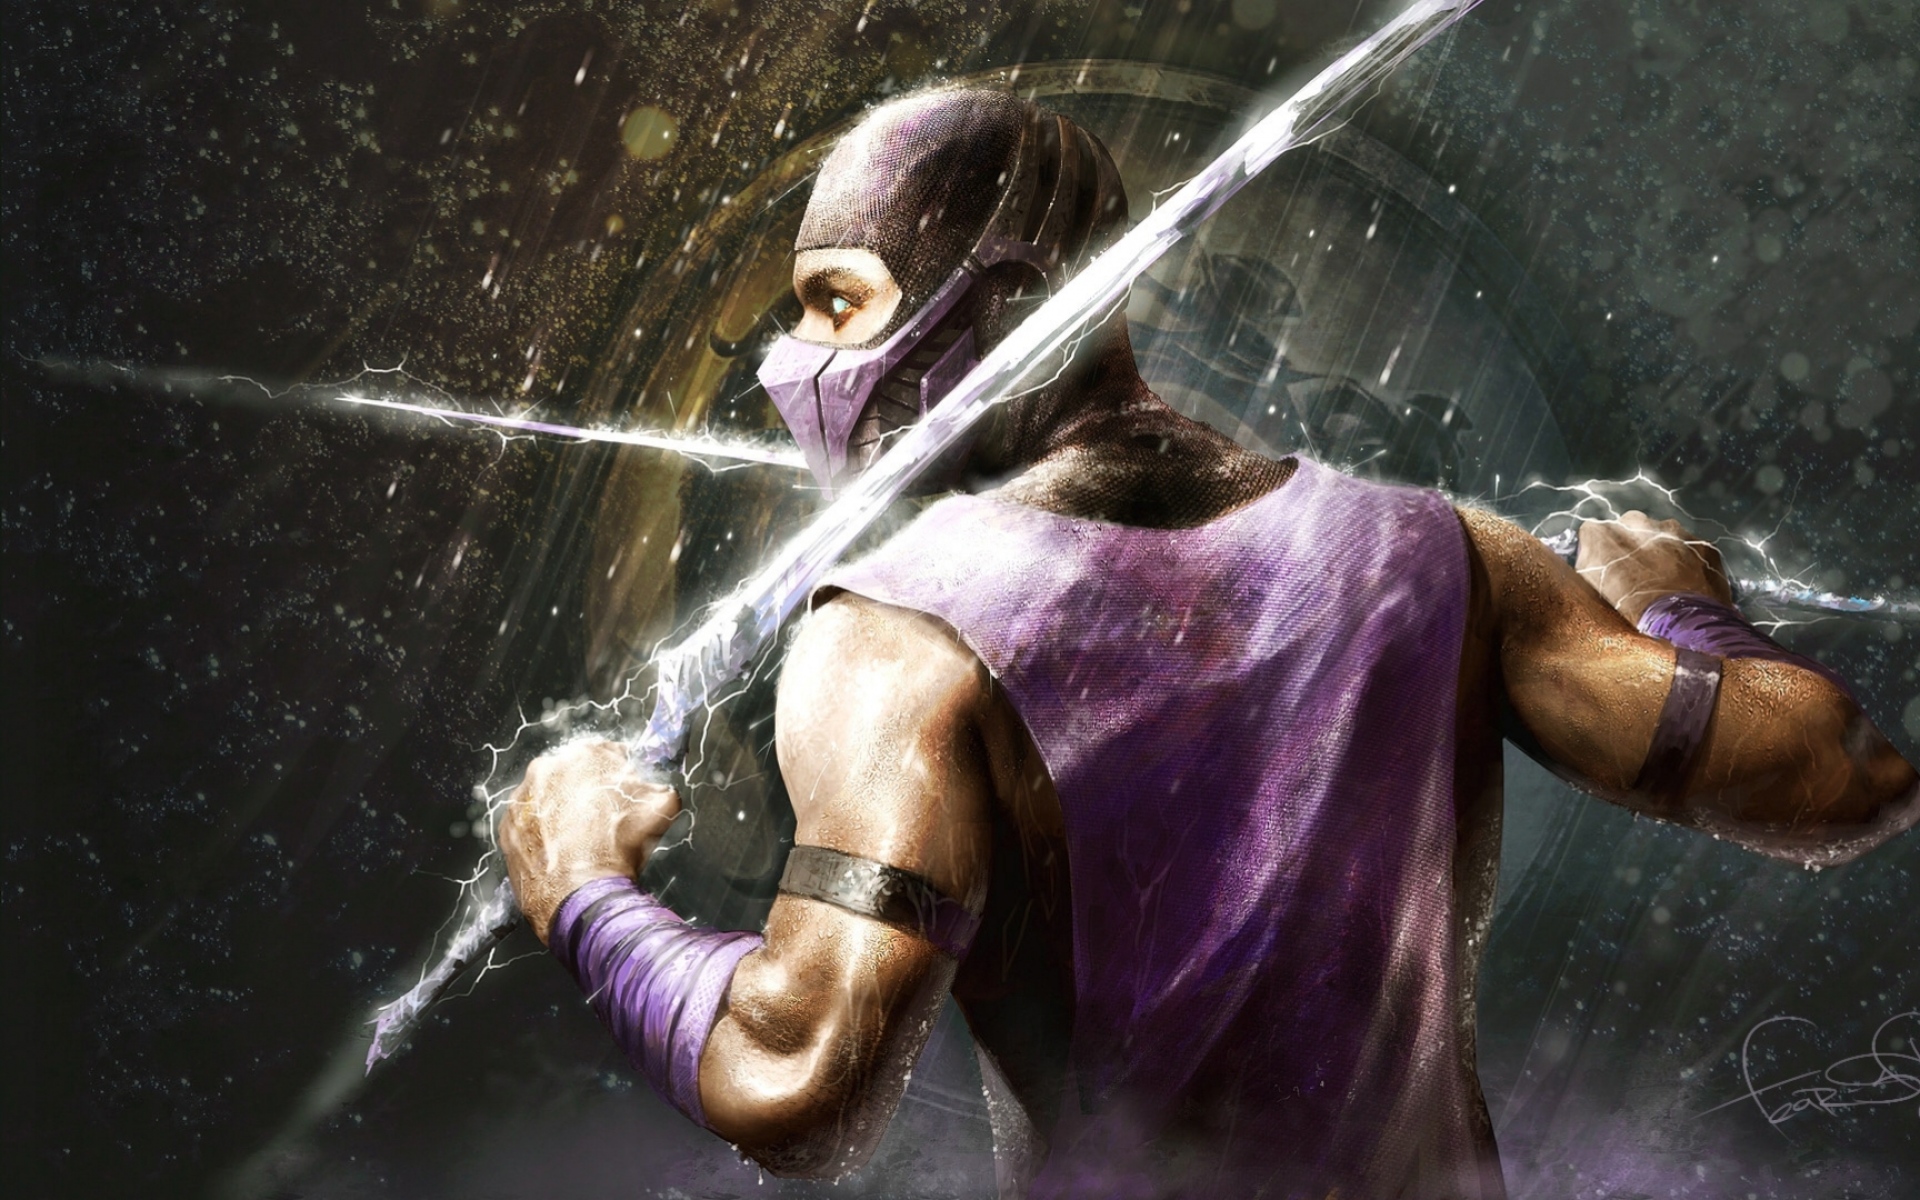 Картинки Mortal Kombat, дождь, герой, мечи, костюм фото и обои на рабочий стол